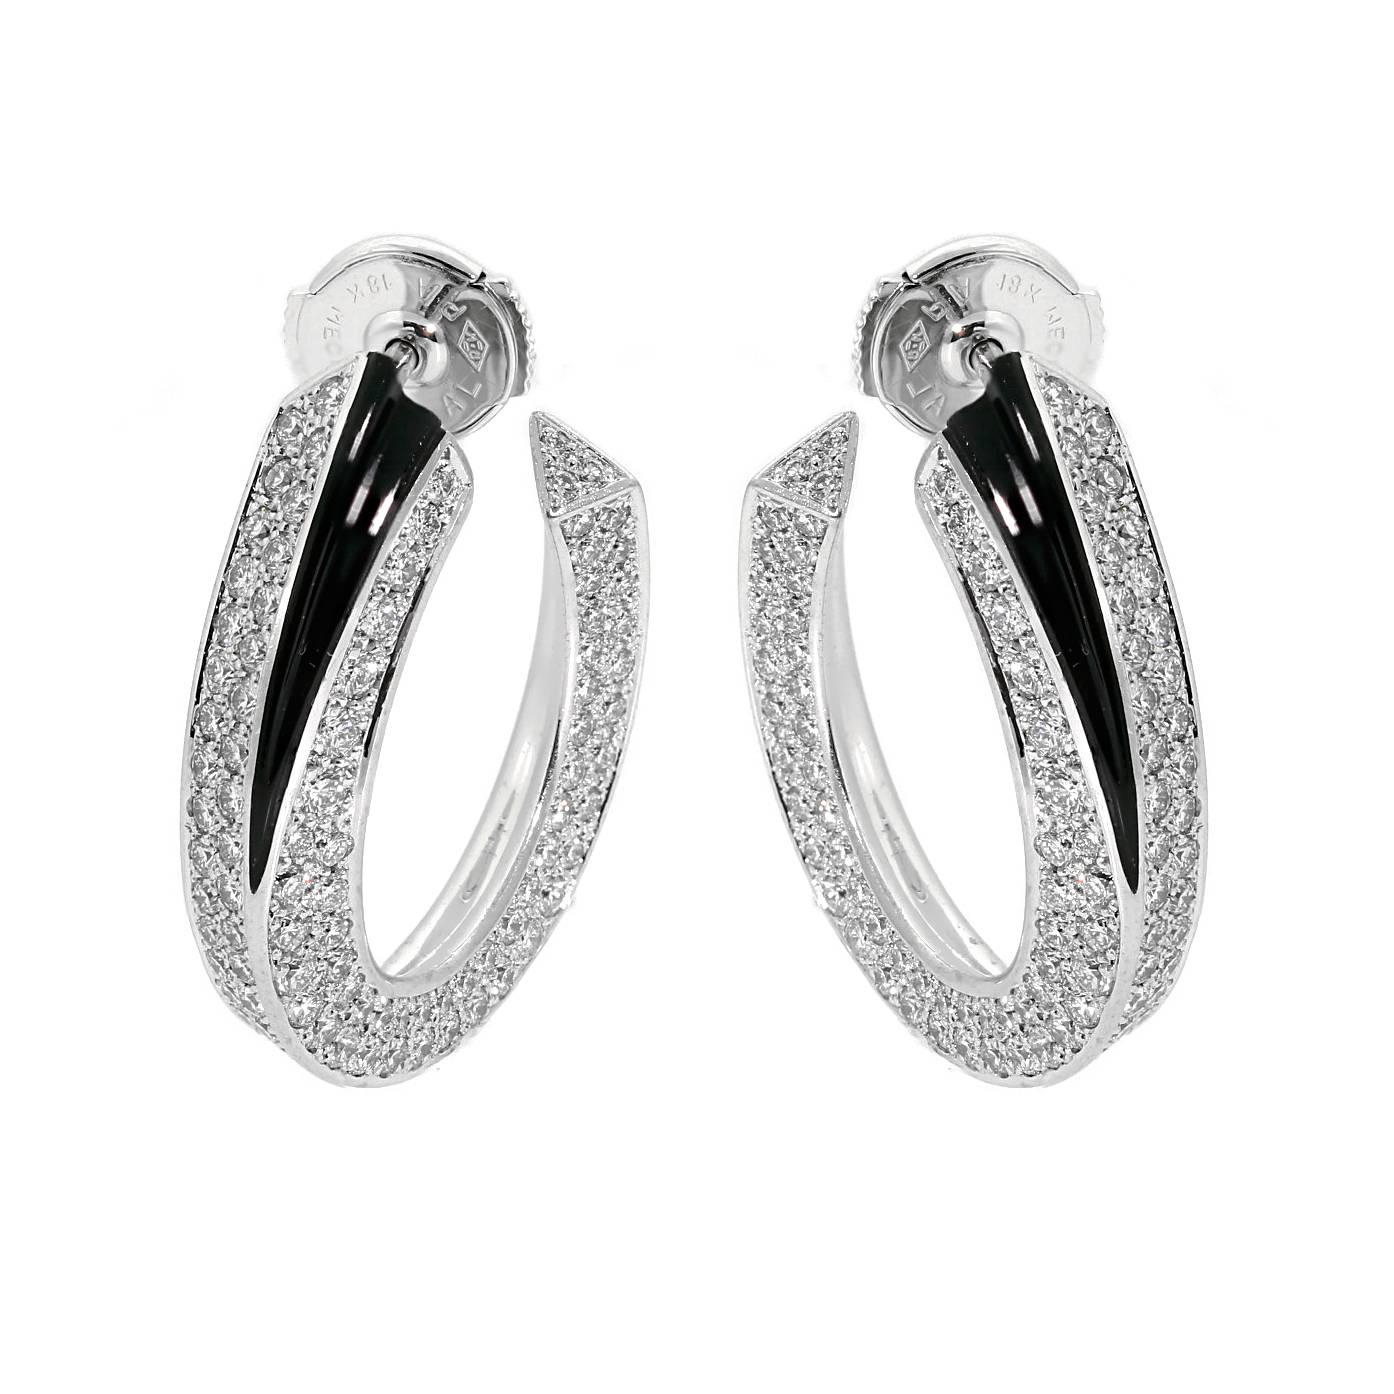 Ein prächtiges Paar Cartier Panthere Ohrringe, geschmückt mit ca. 5cts feinster runder Cartier Diamanten im Brillantschliff, gefasst in 18k Weißgold.

Ohrring Breite: .25